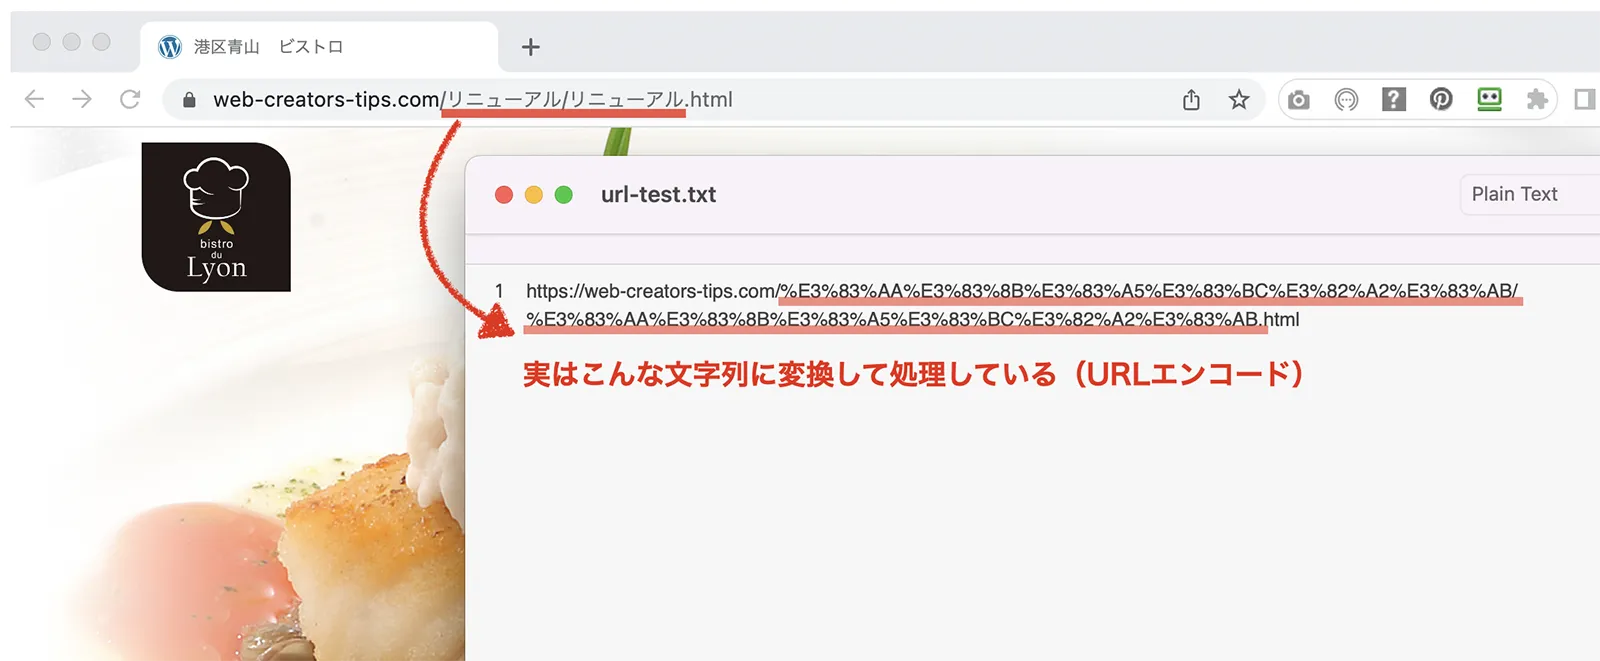 日本語ファイル名がURLエンコードされている例